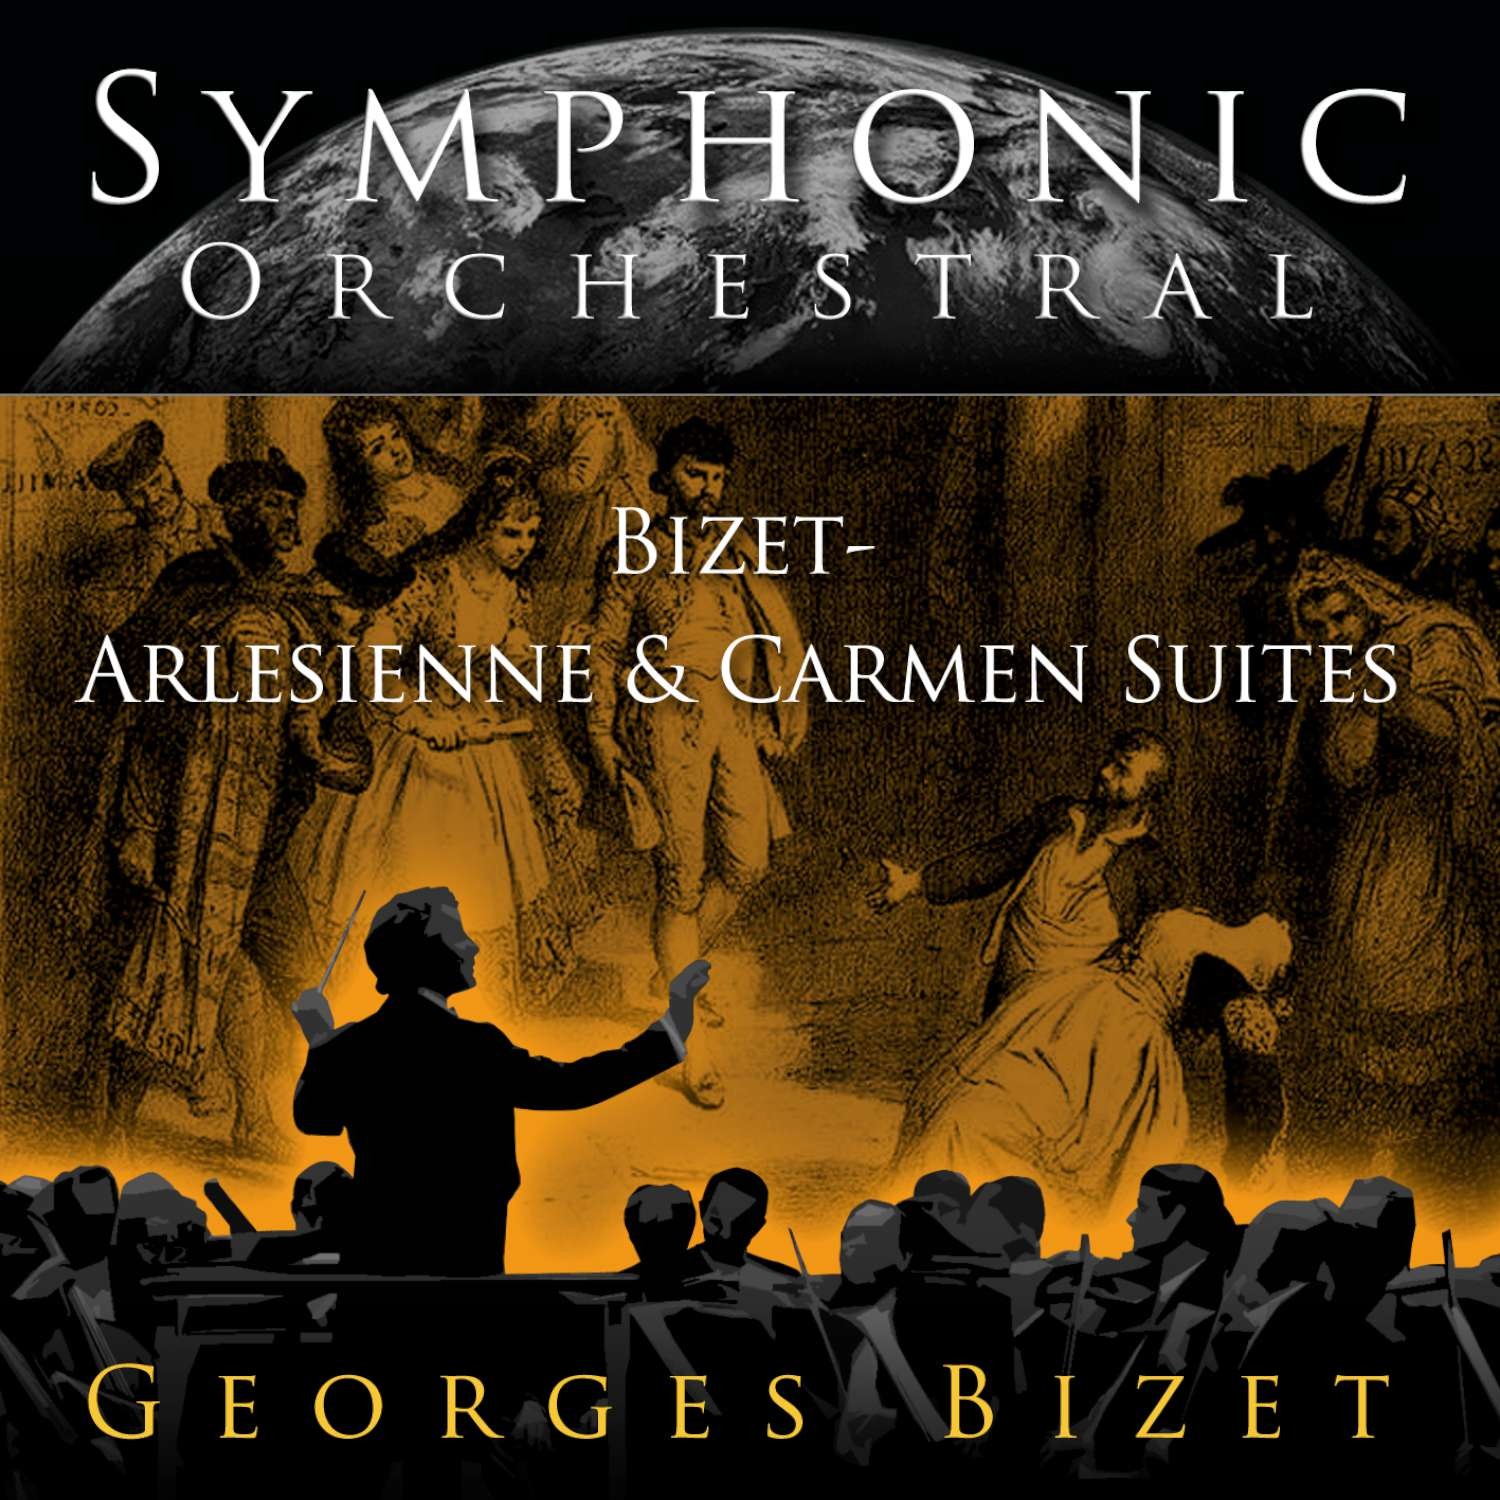 Carmen Suite #1 - Intermezzo